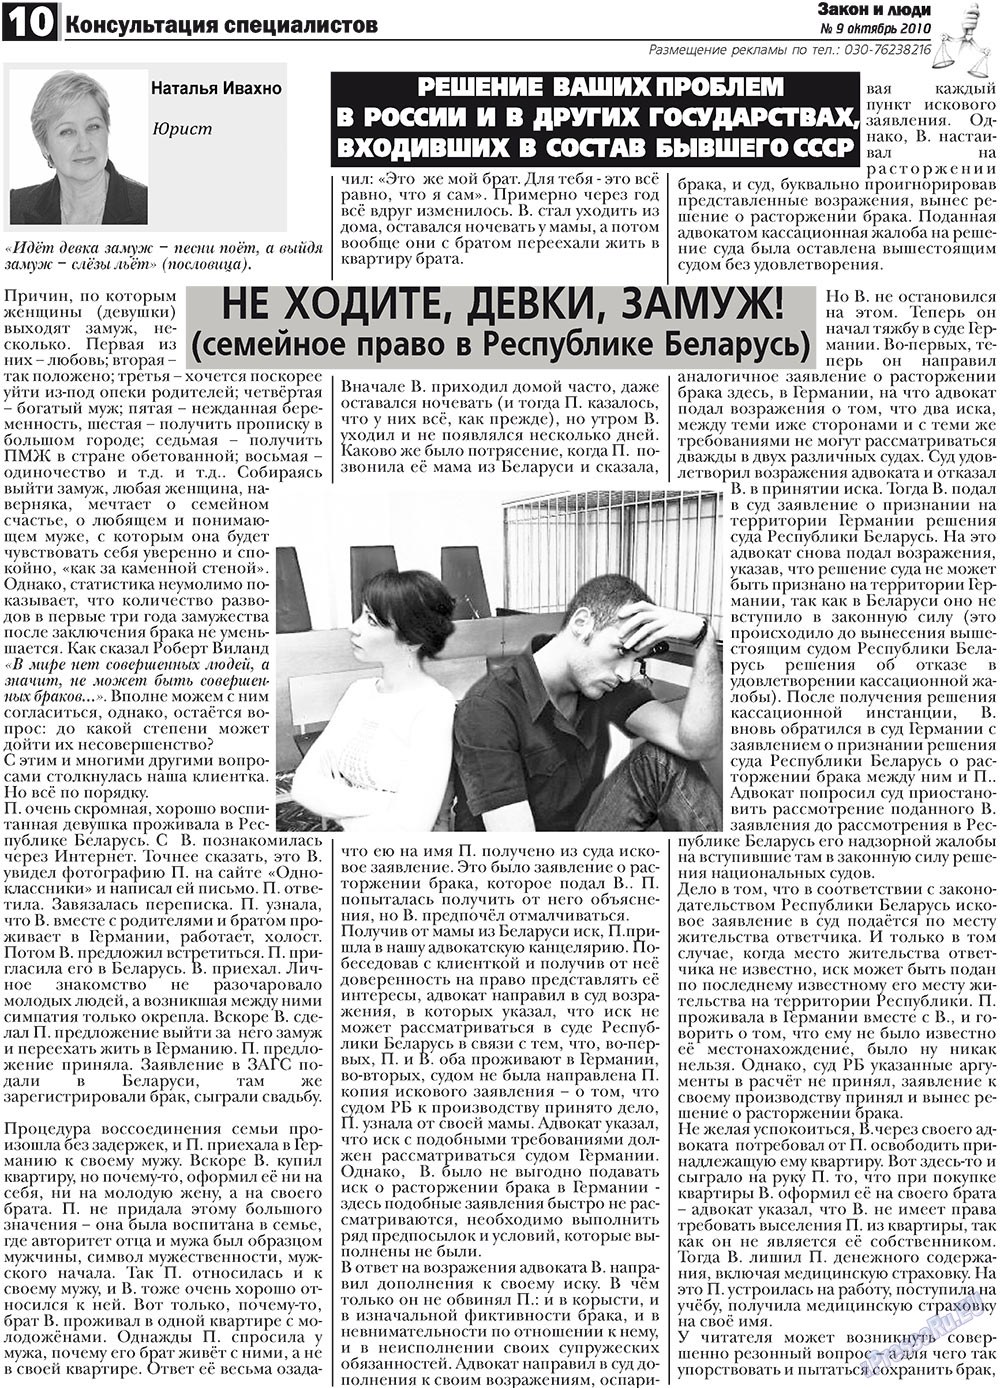 Закон и люди, газета. 2010 №9 стр.10